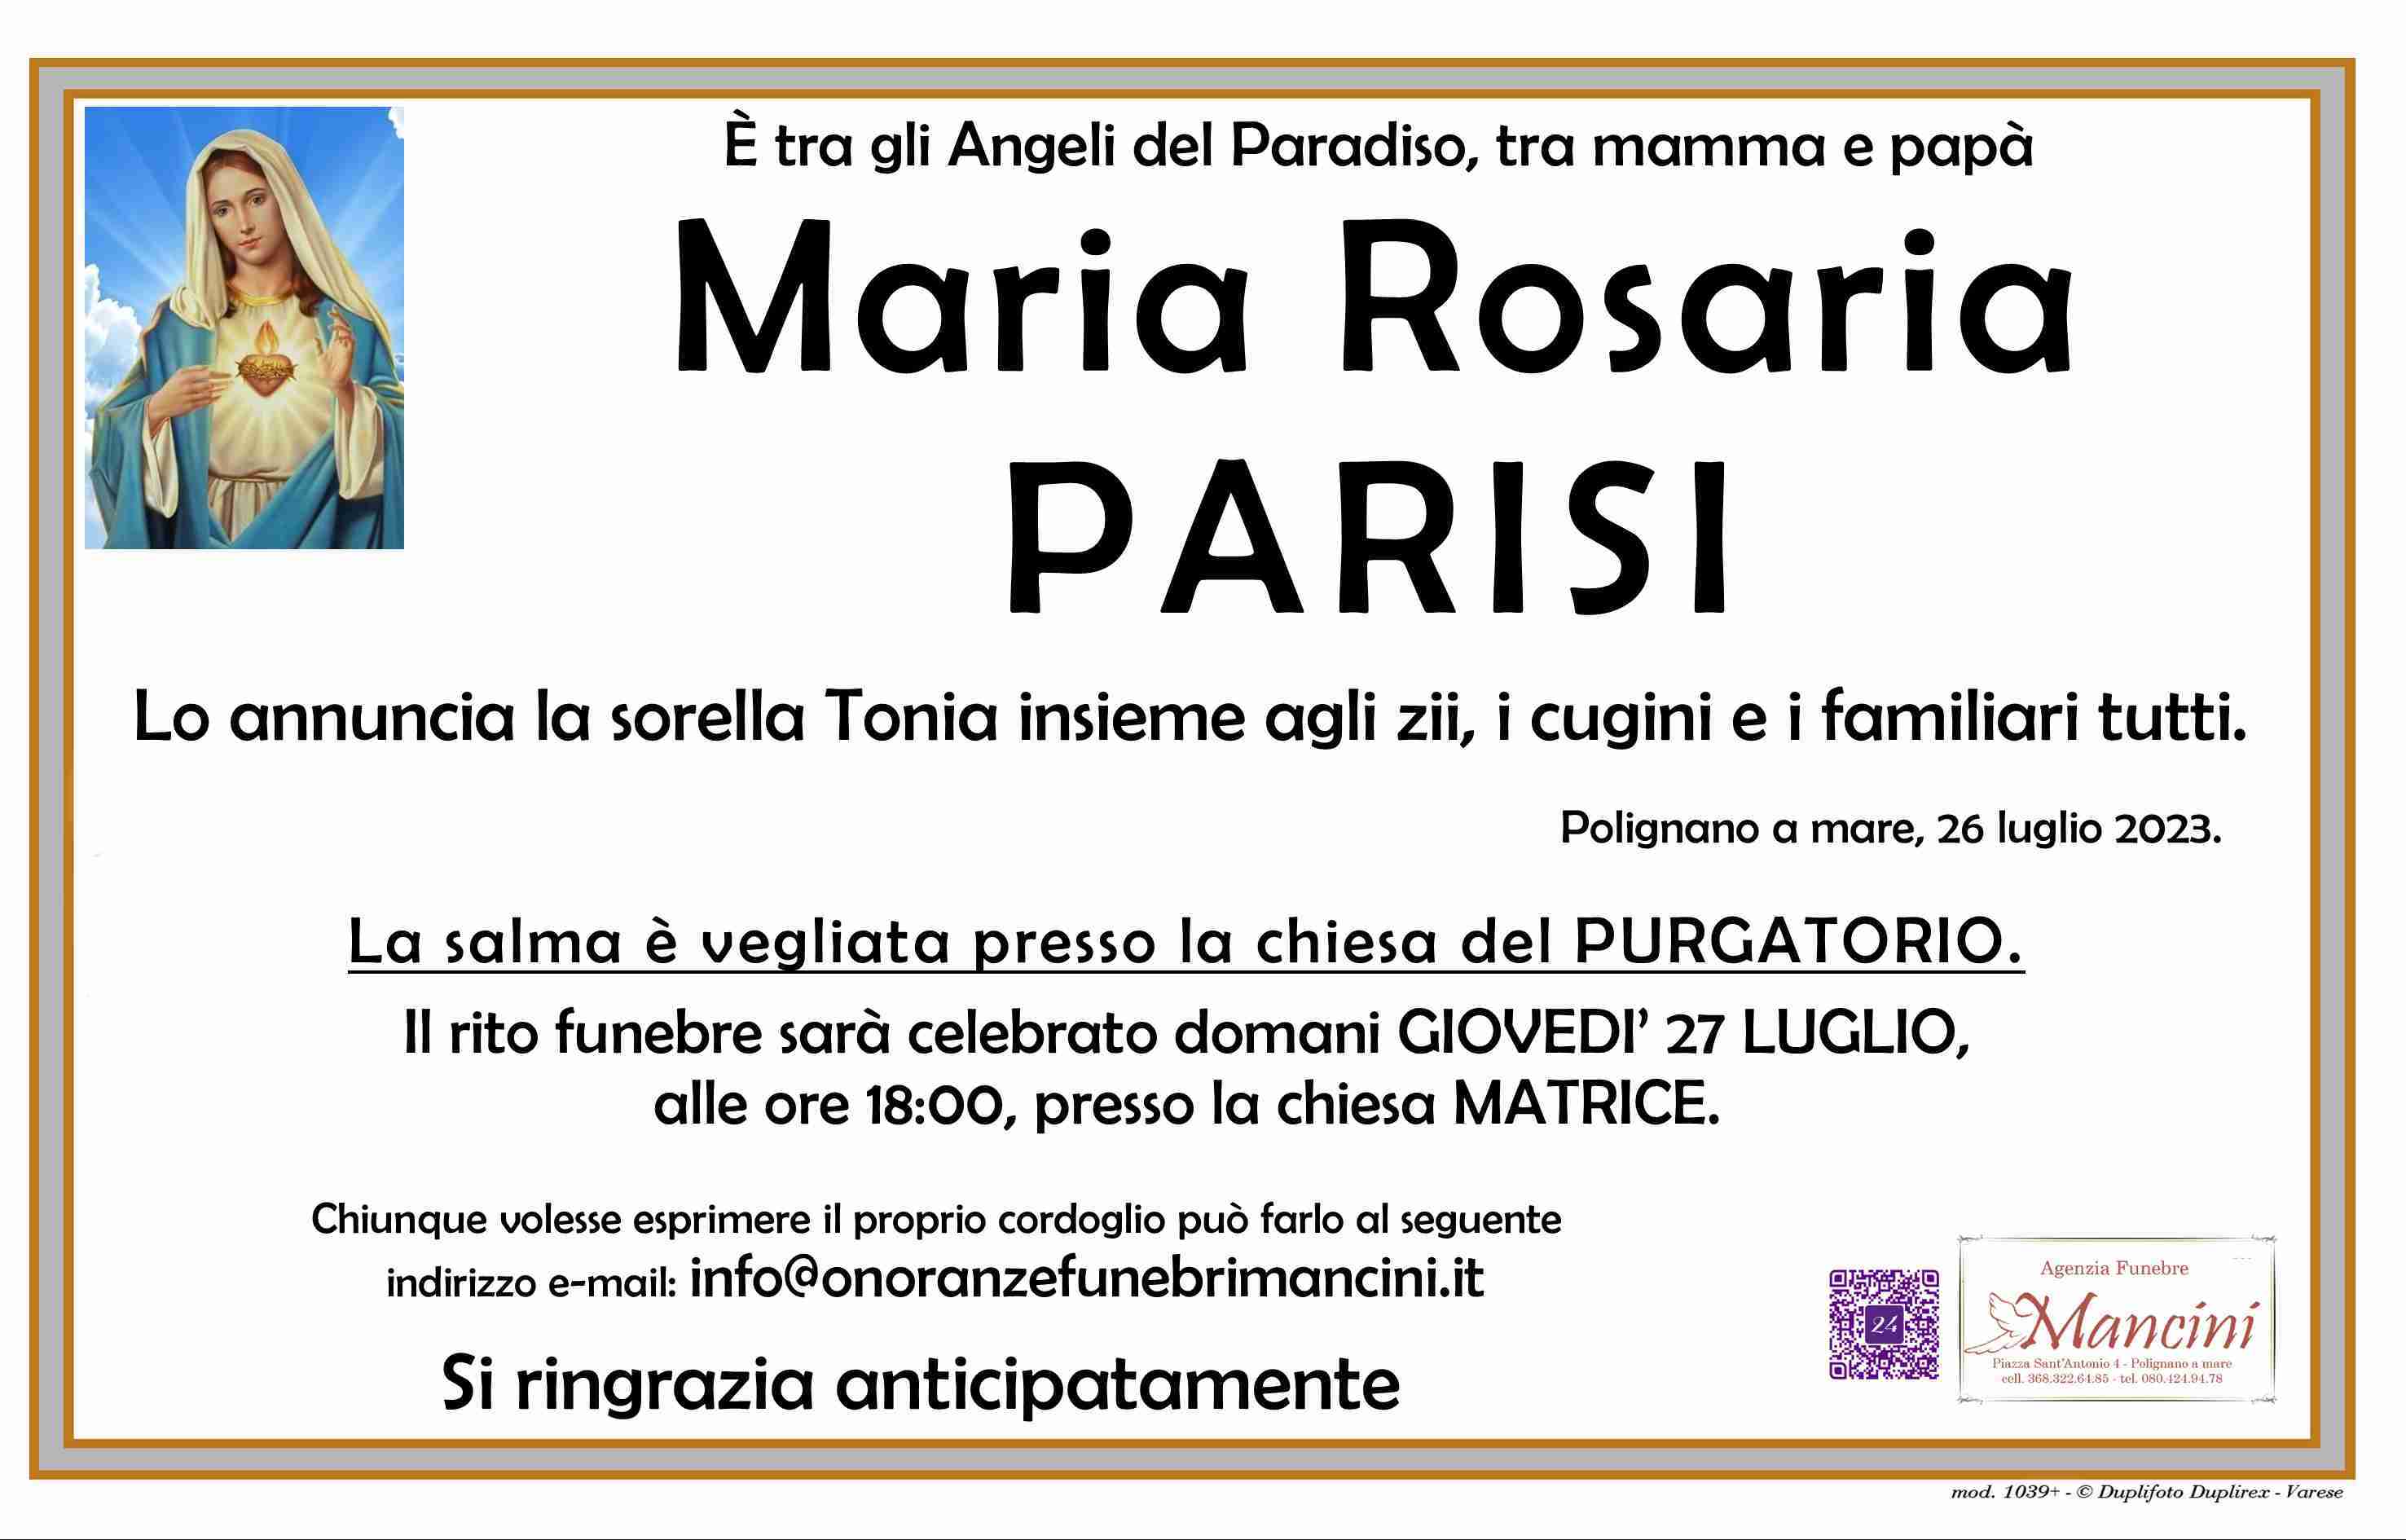 Maria Rosaria Parisi